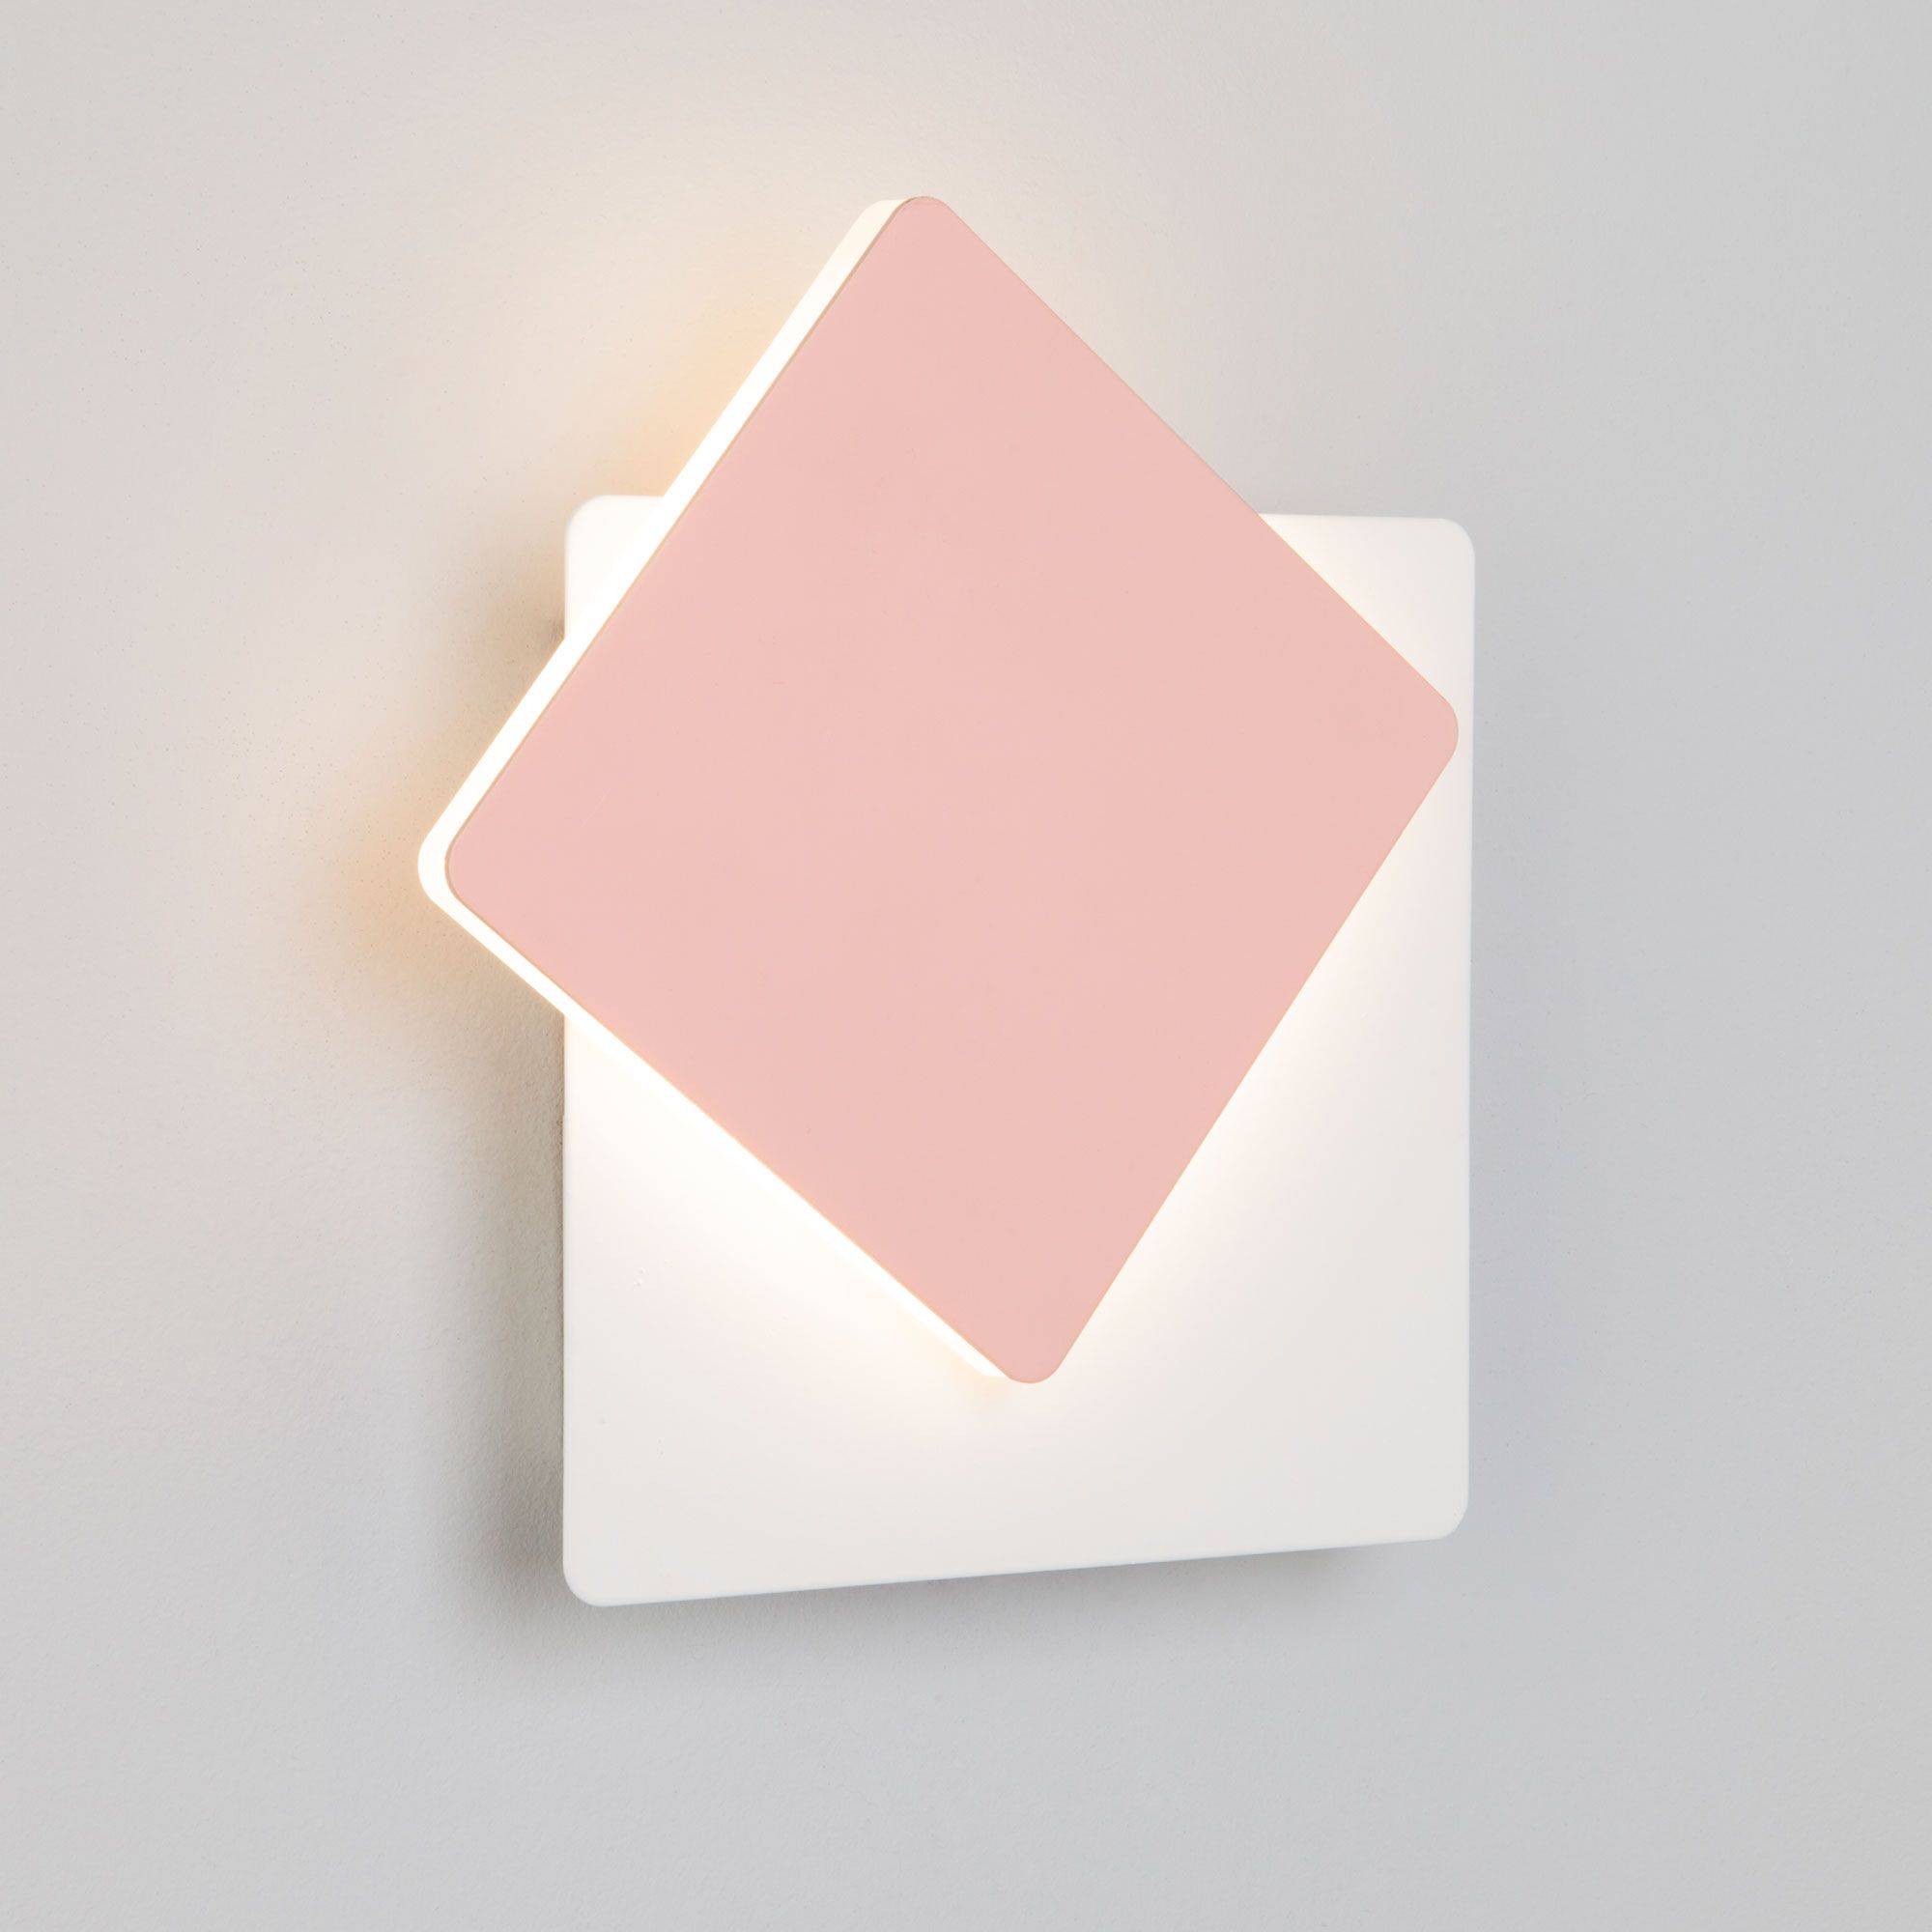 Настенный светодиодный светильник белый/розовый 40136/1